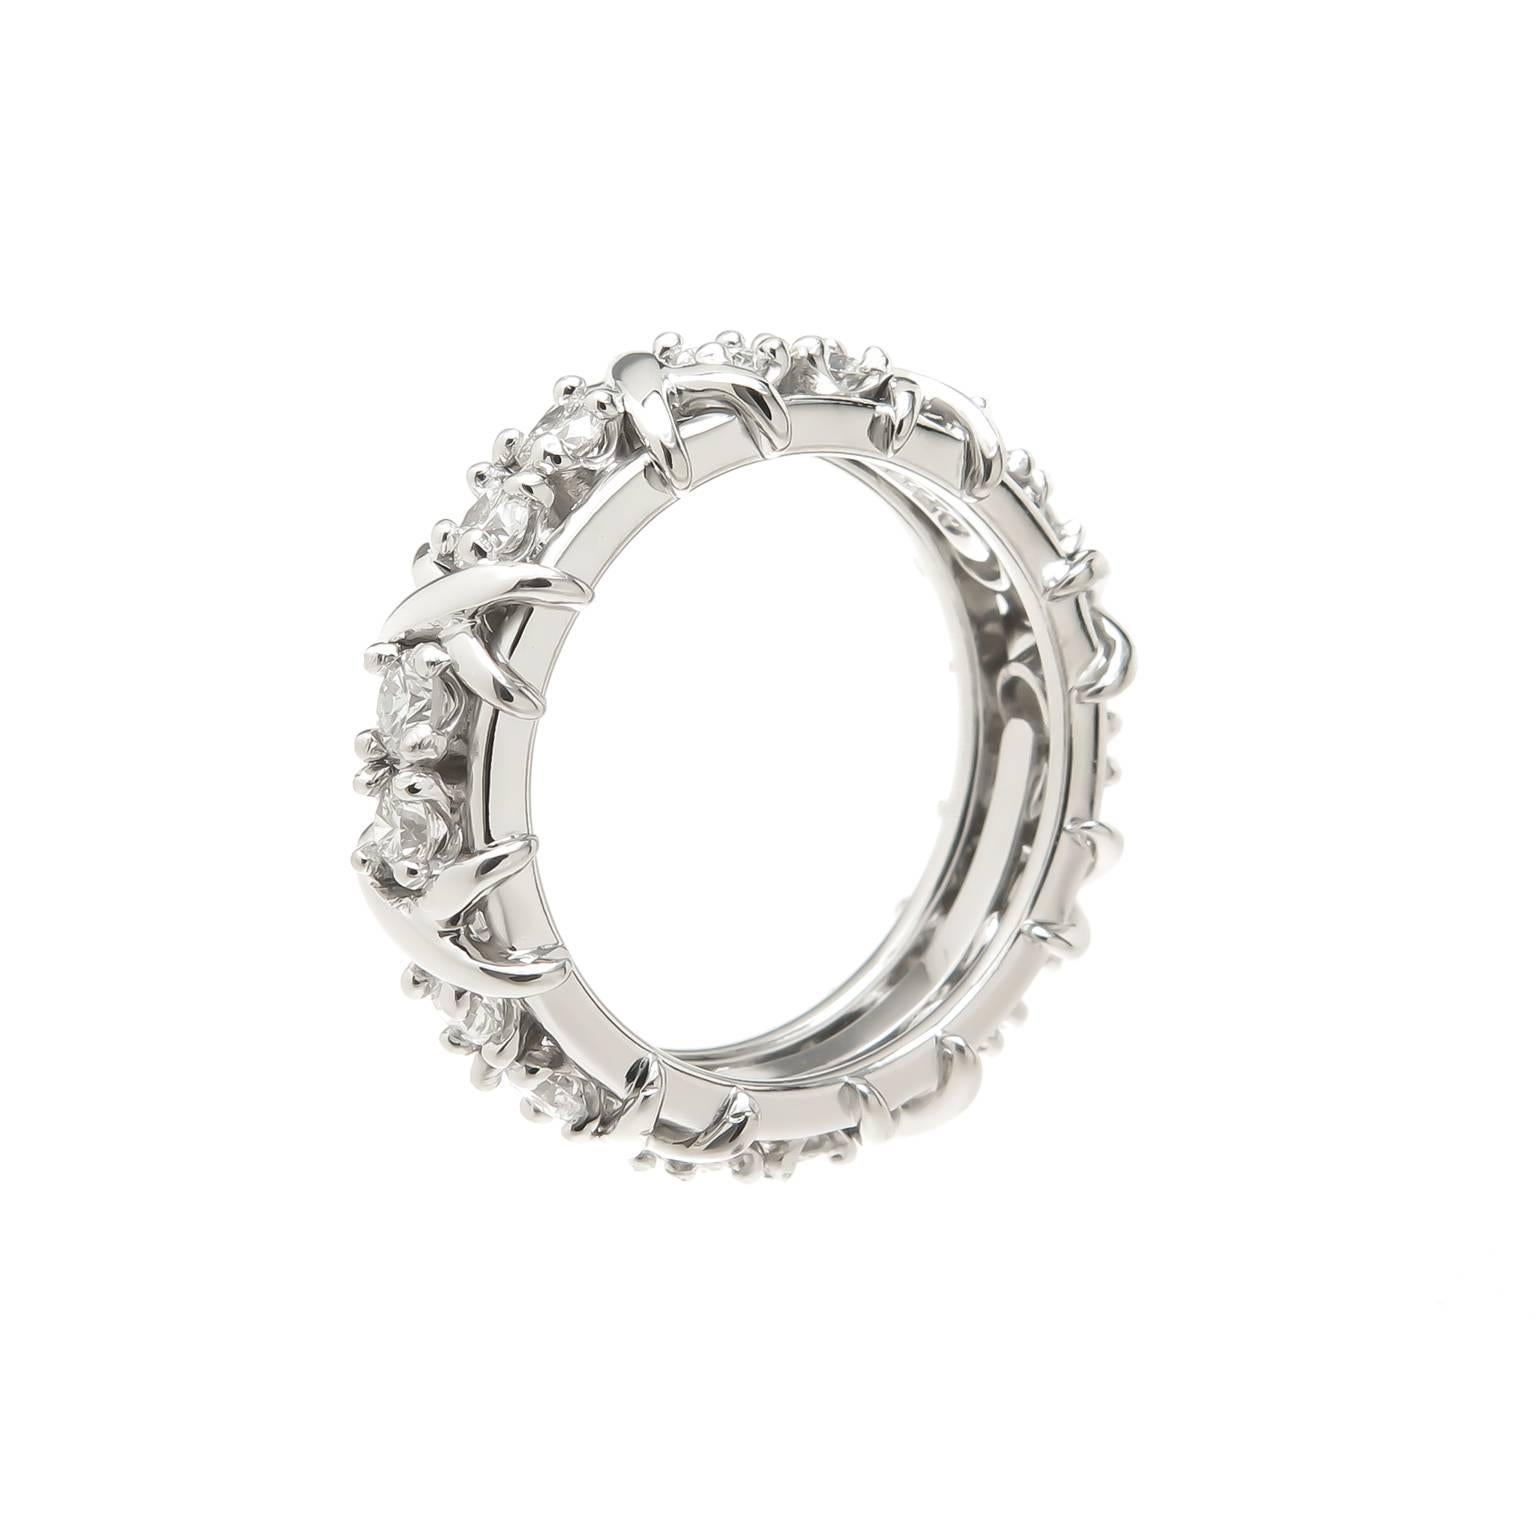 CIRCA 2005 Jean Schlumberger für Tiffany & Company Platin X Band Ring, Messung 6 MM breit und mit 16 runden Diamanten im Brillantschliff von insgesamt 1,16 Karat besetzt. Fingergröße = 6 1/2. Ausgezeichneter, fast ungetragener Zustand.  Kommt in